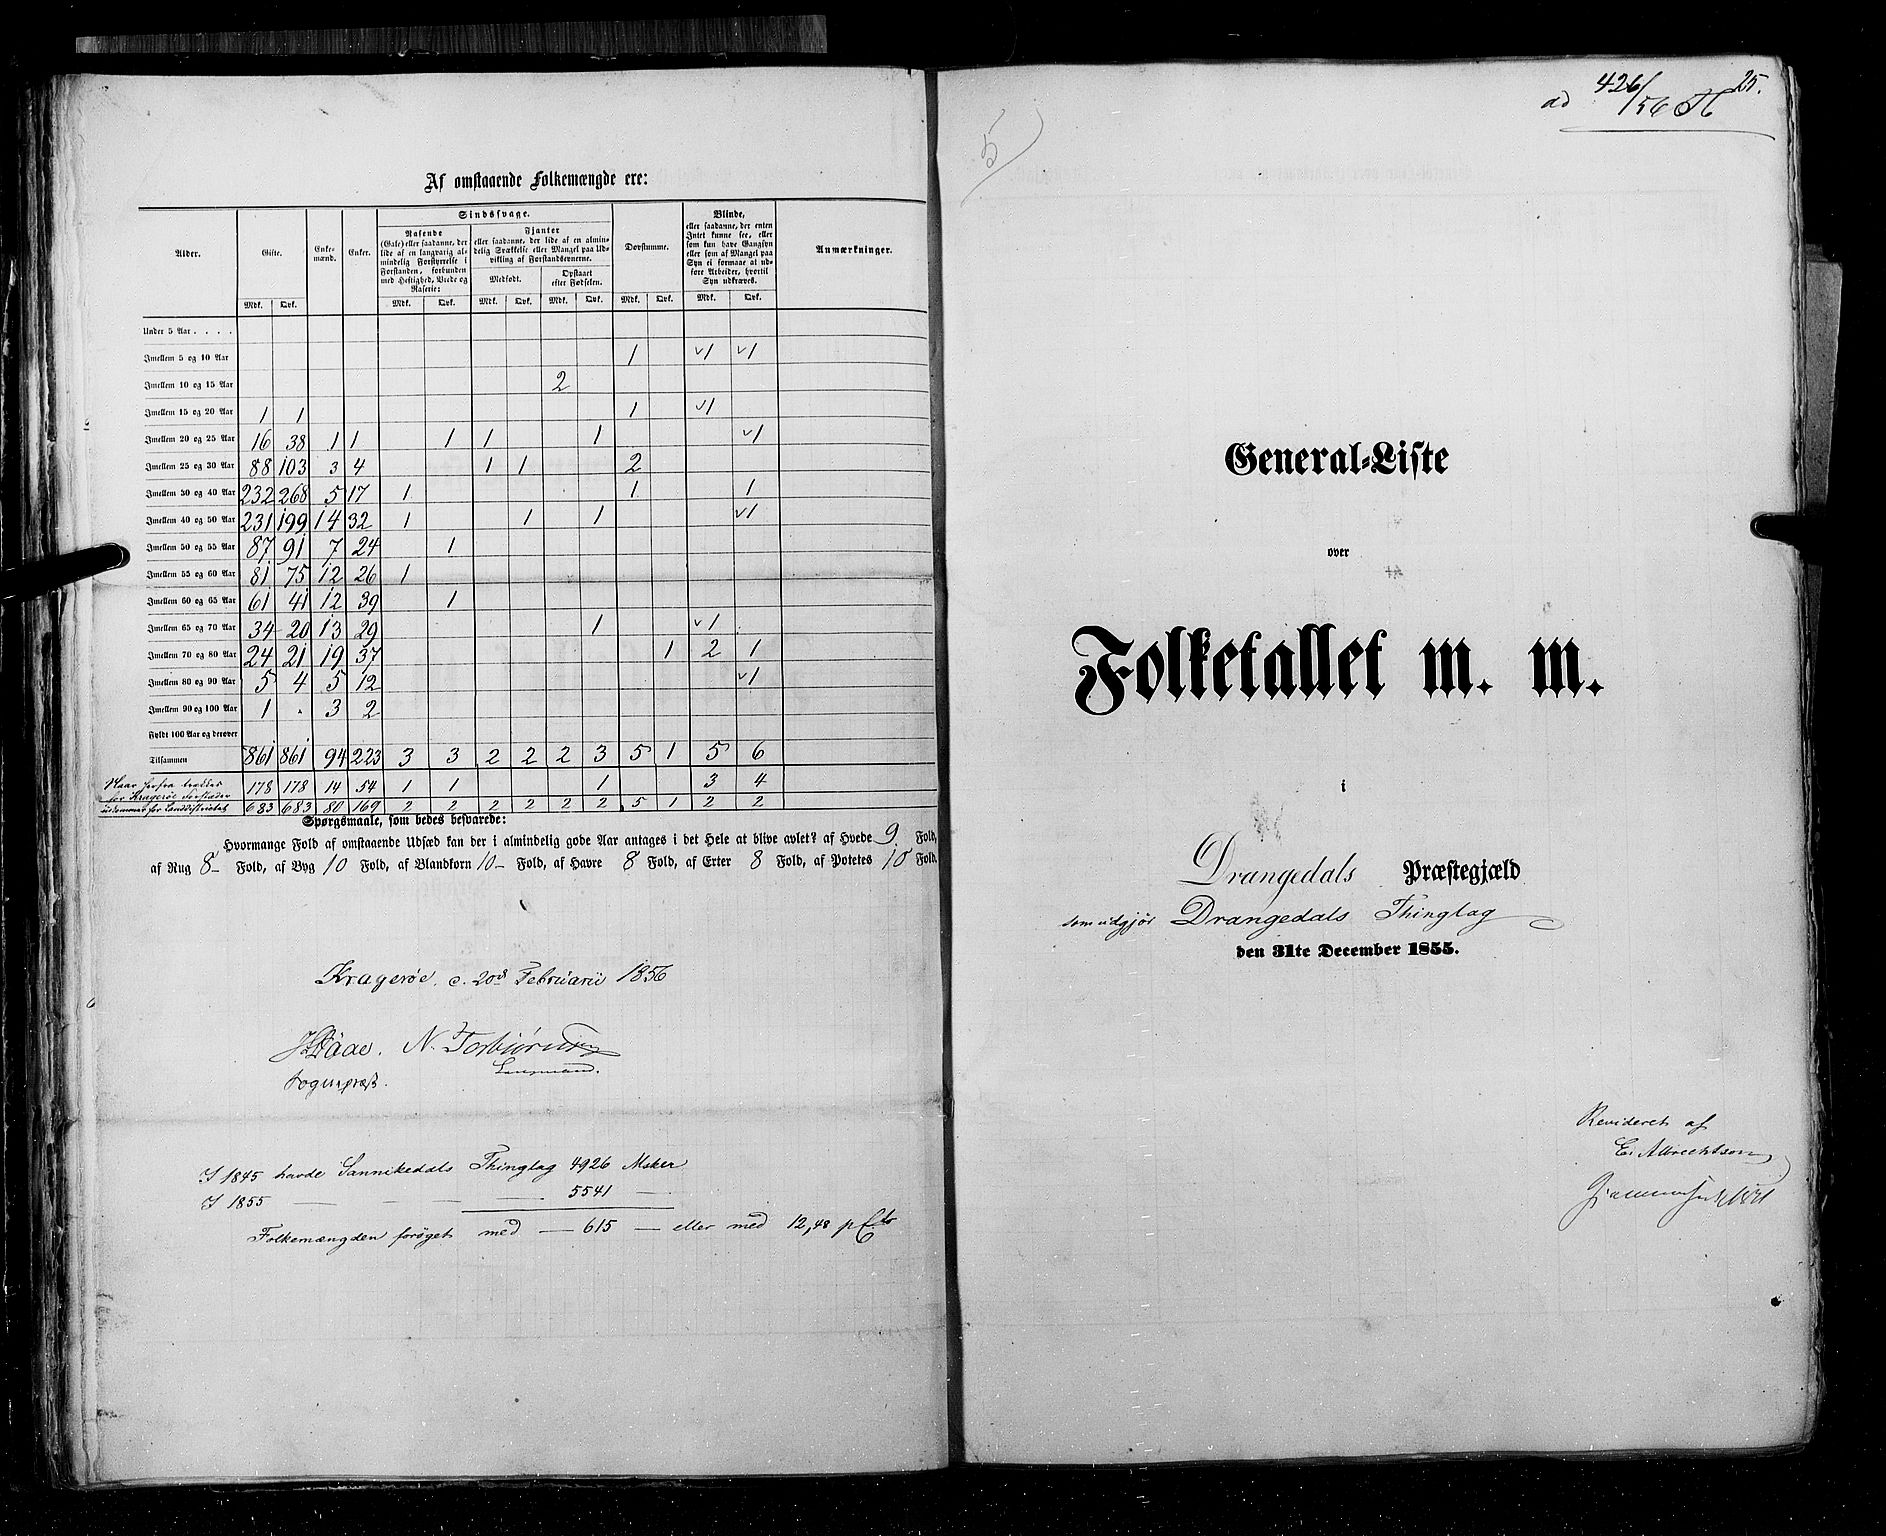 RA, Folketellingen 1855, bind 3: Bratsberg amt, Nedenes amt og Lister og Mandal amt, 1855, s. 25